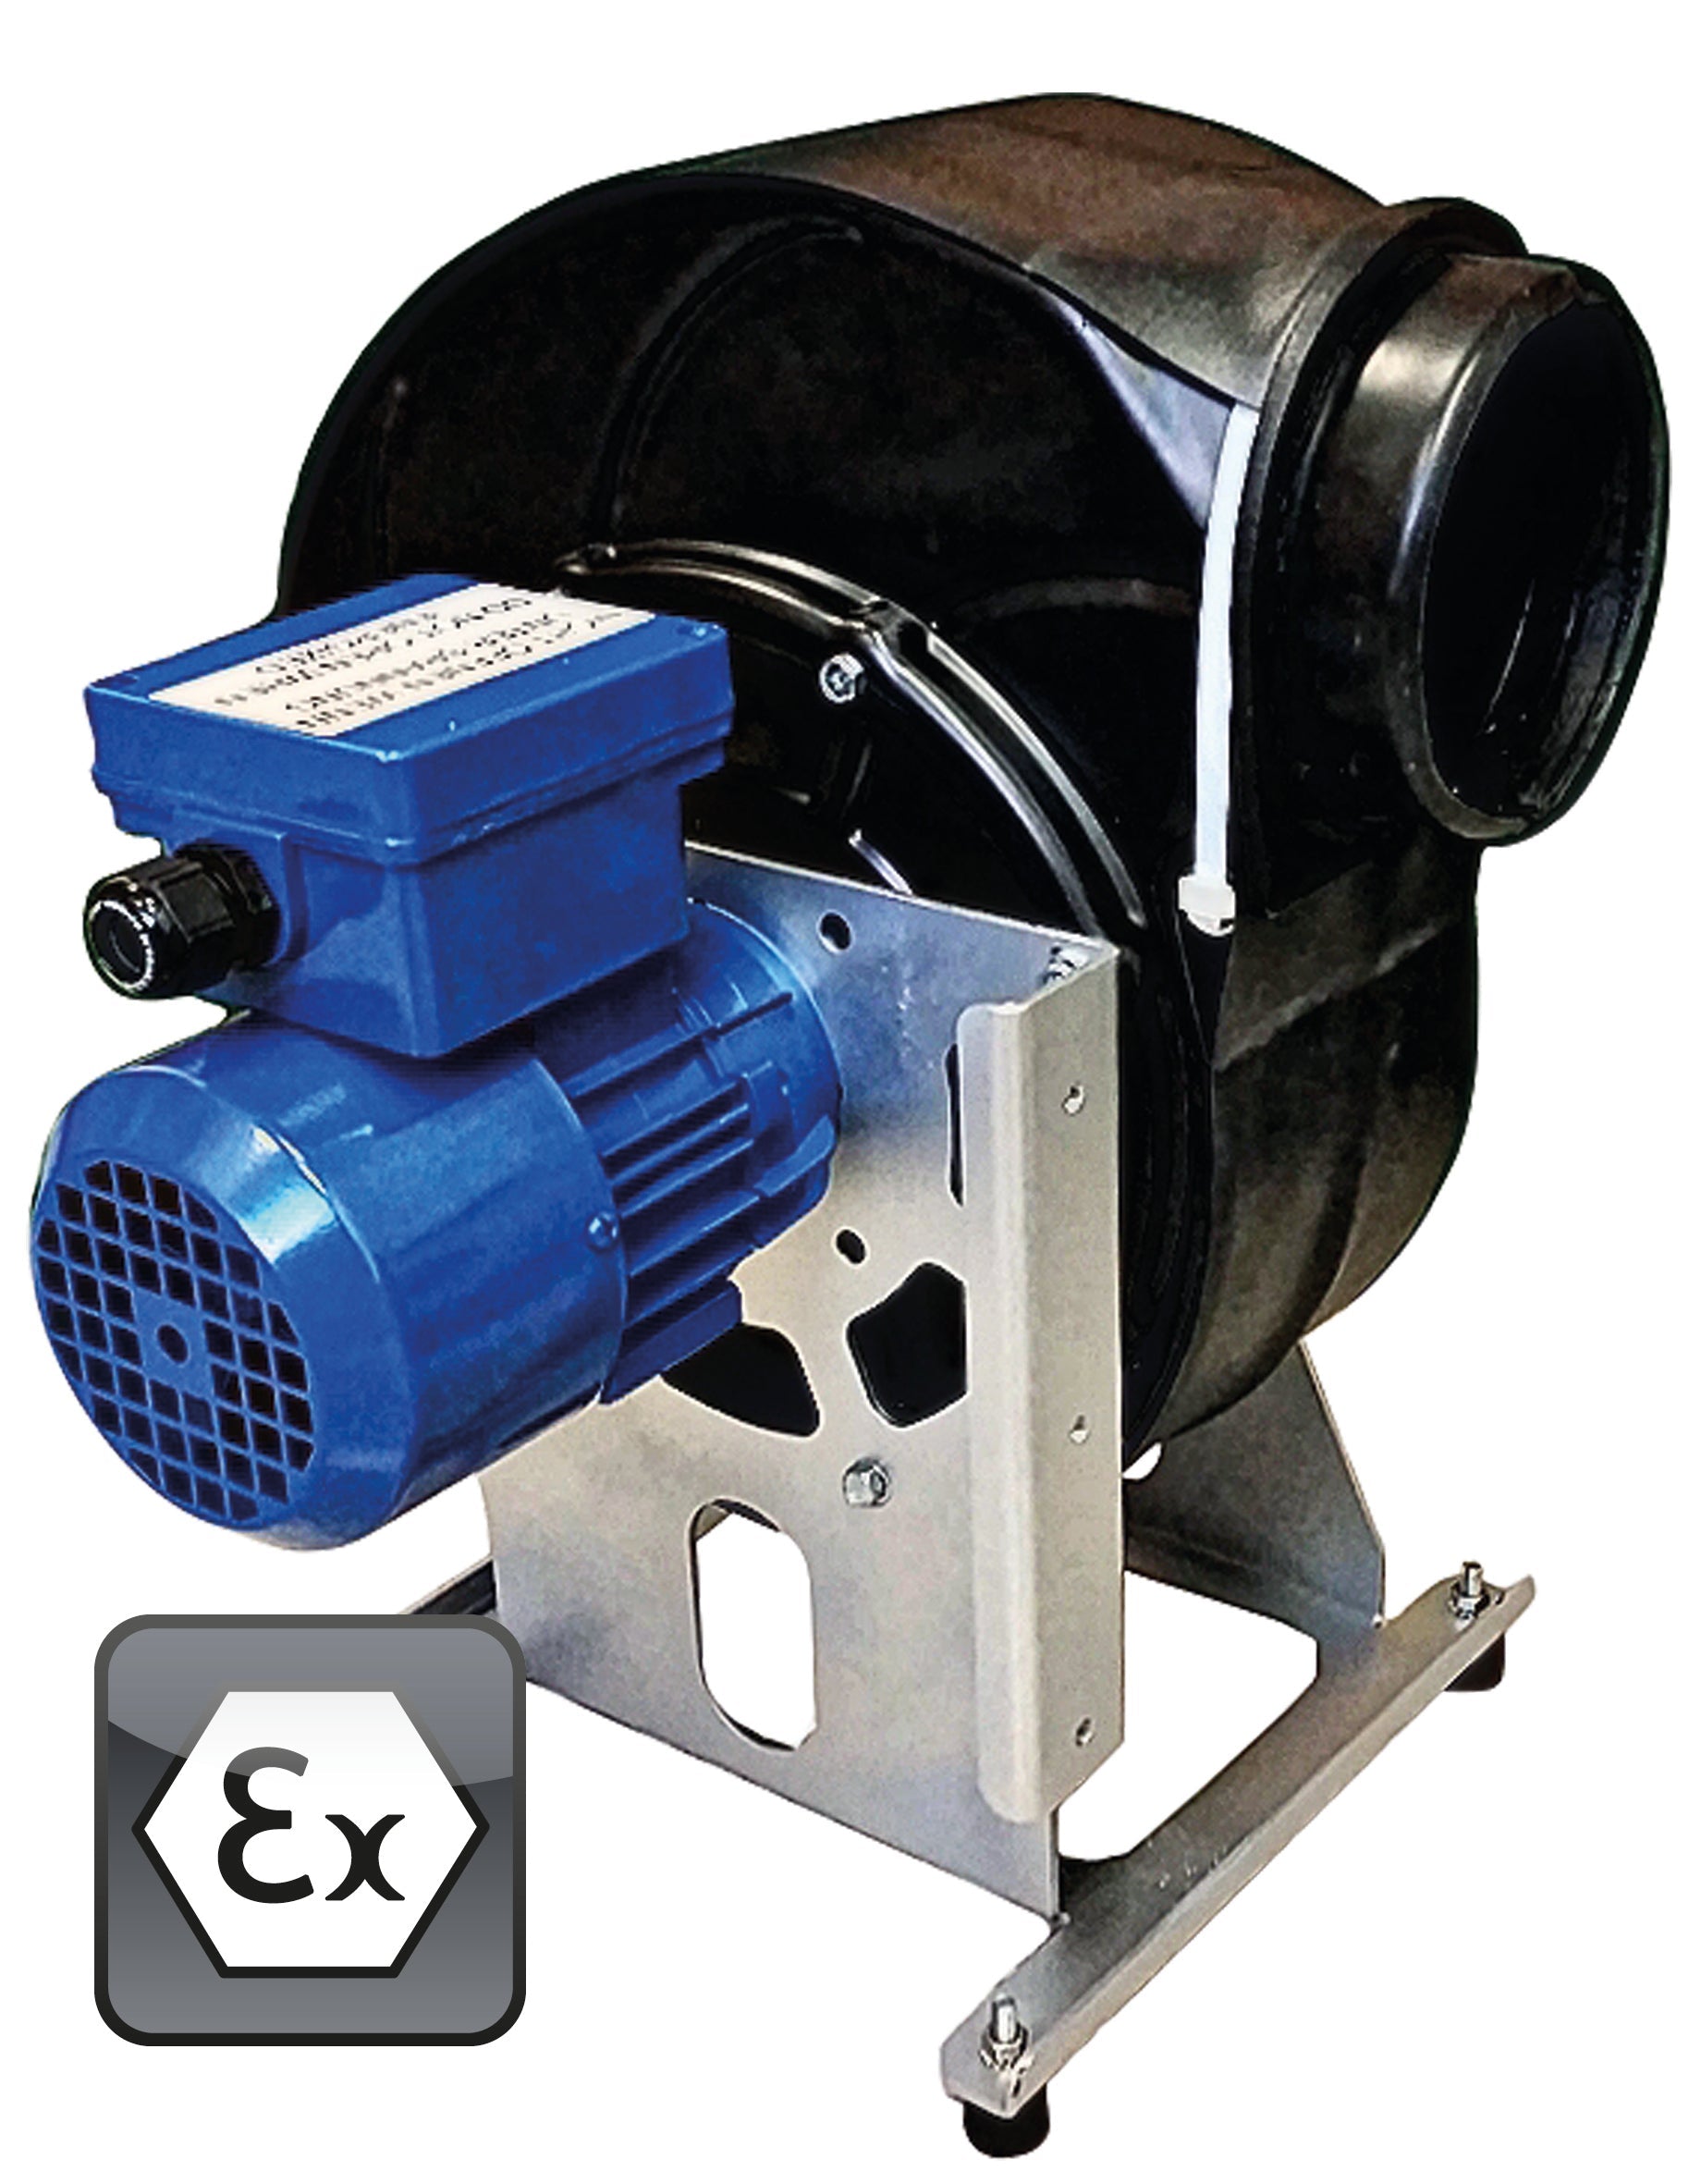 Ventilator Modell EP.VE.29429 für Gefahrstoffarbeitsplätze, Polypropylen